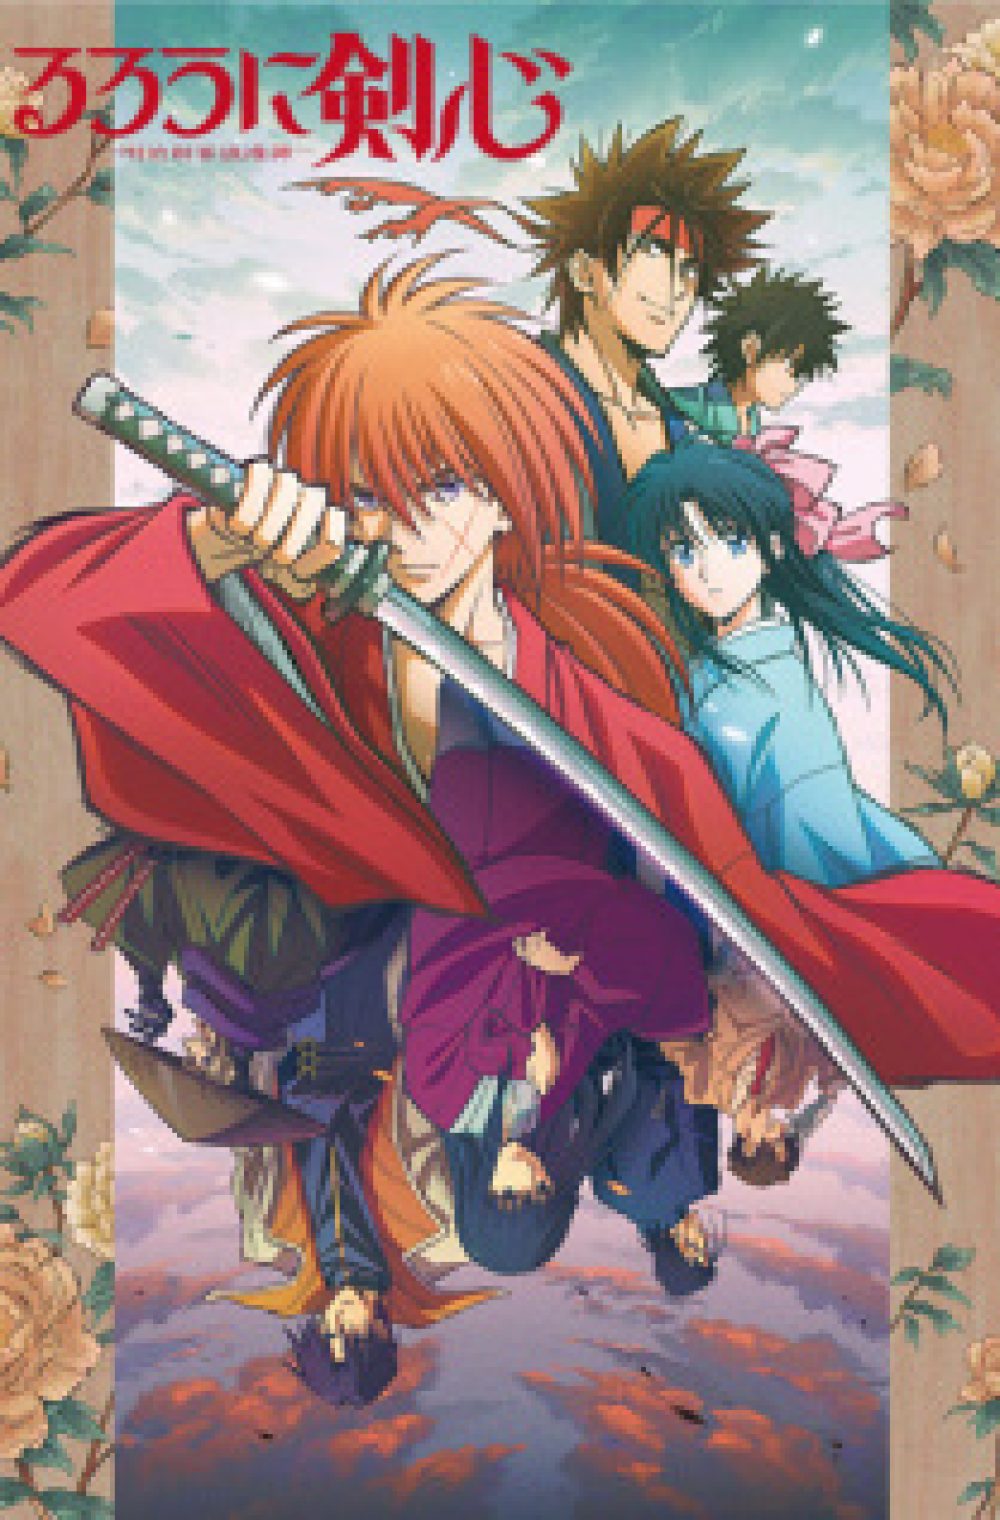 Rurouni Kenshin 2023- Rurouni Kenshin Meiji Kenkaku Romantan (2023)